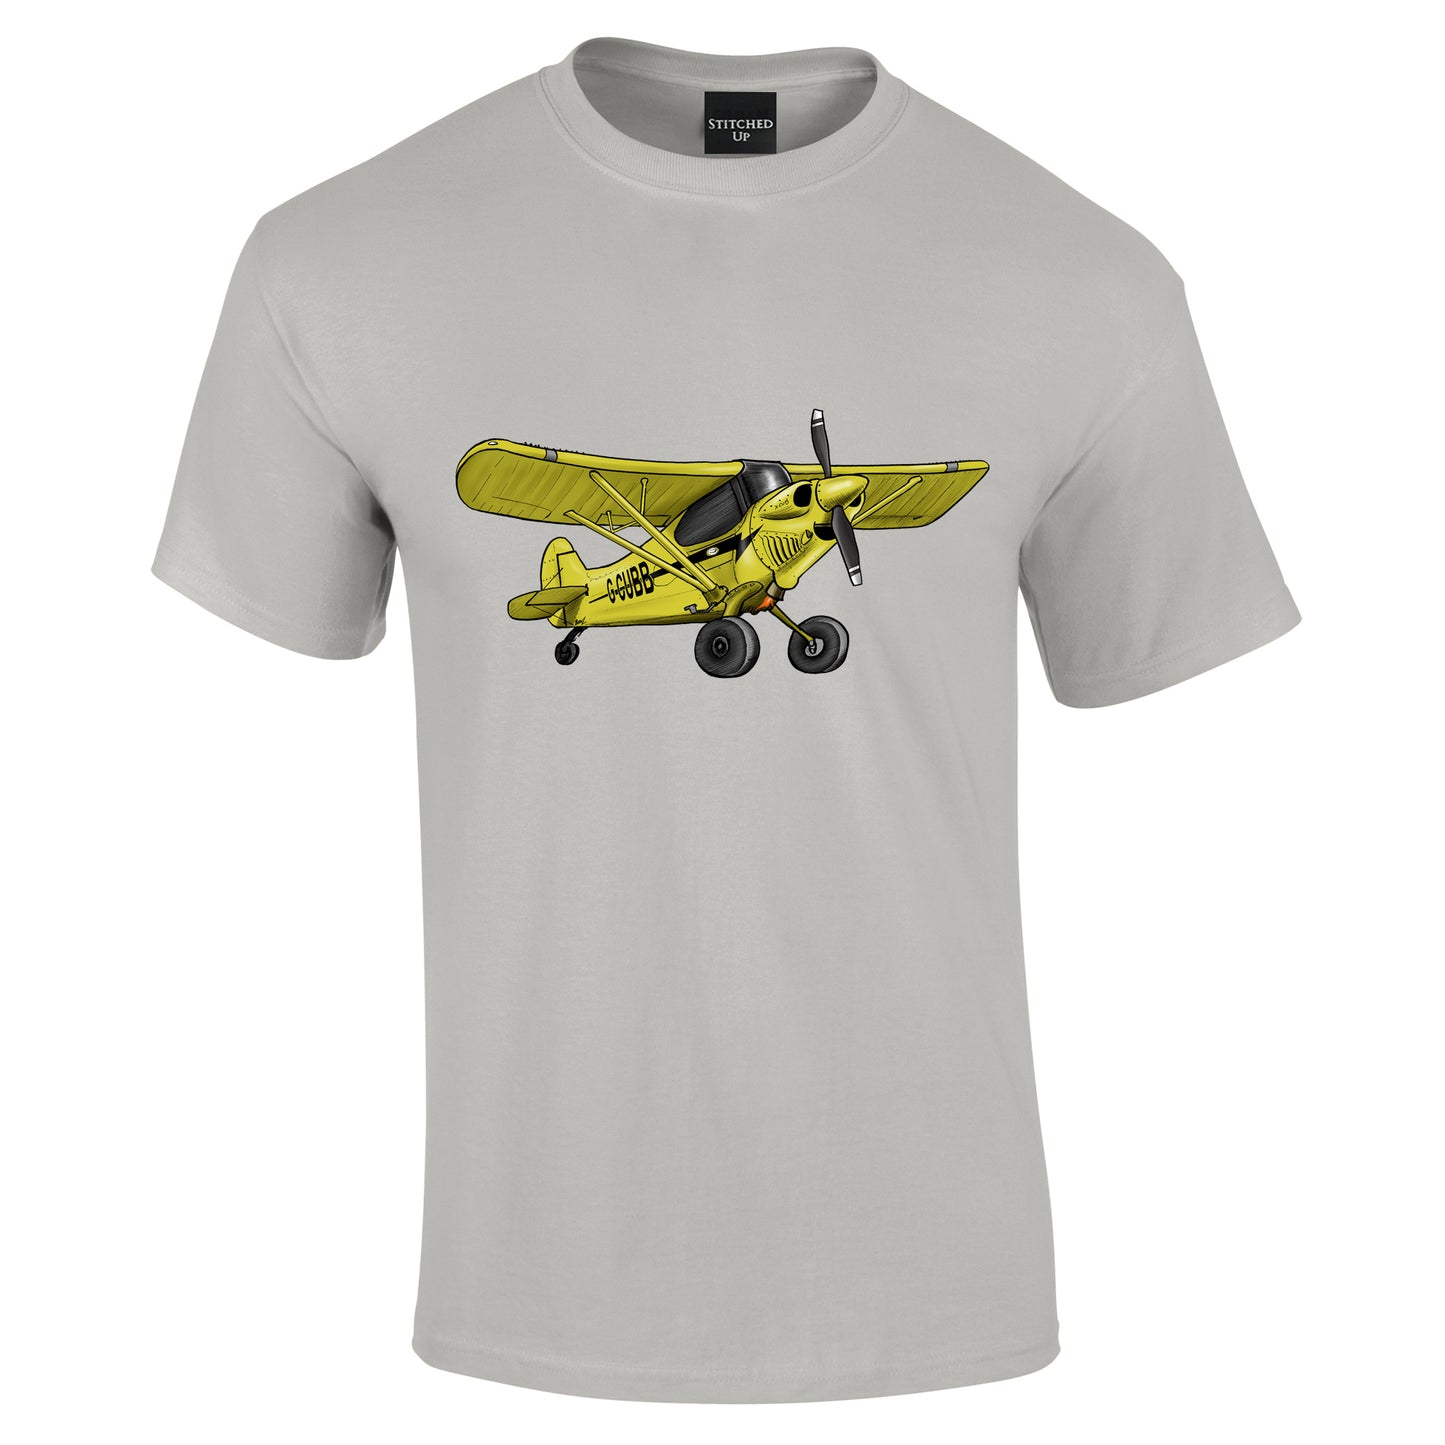 Carbon Super Cub Aircraft T-Shirt G-CUBB